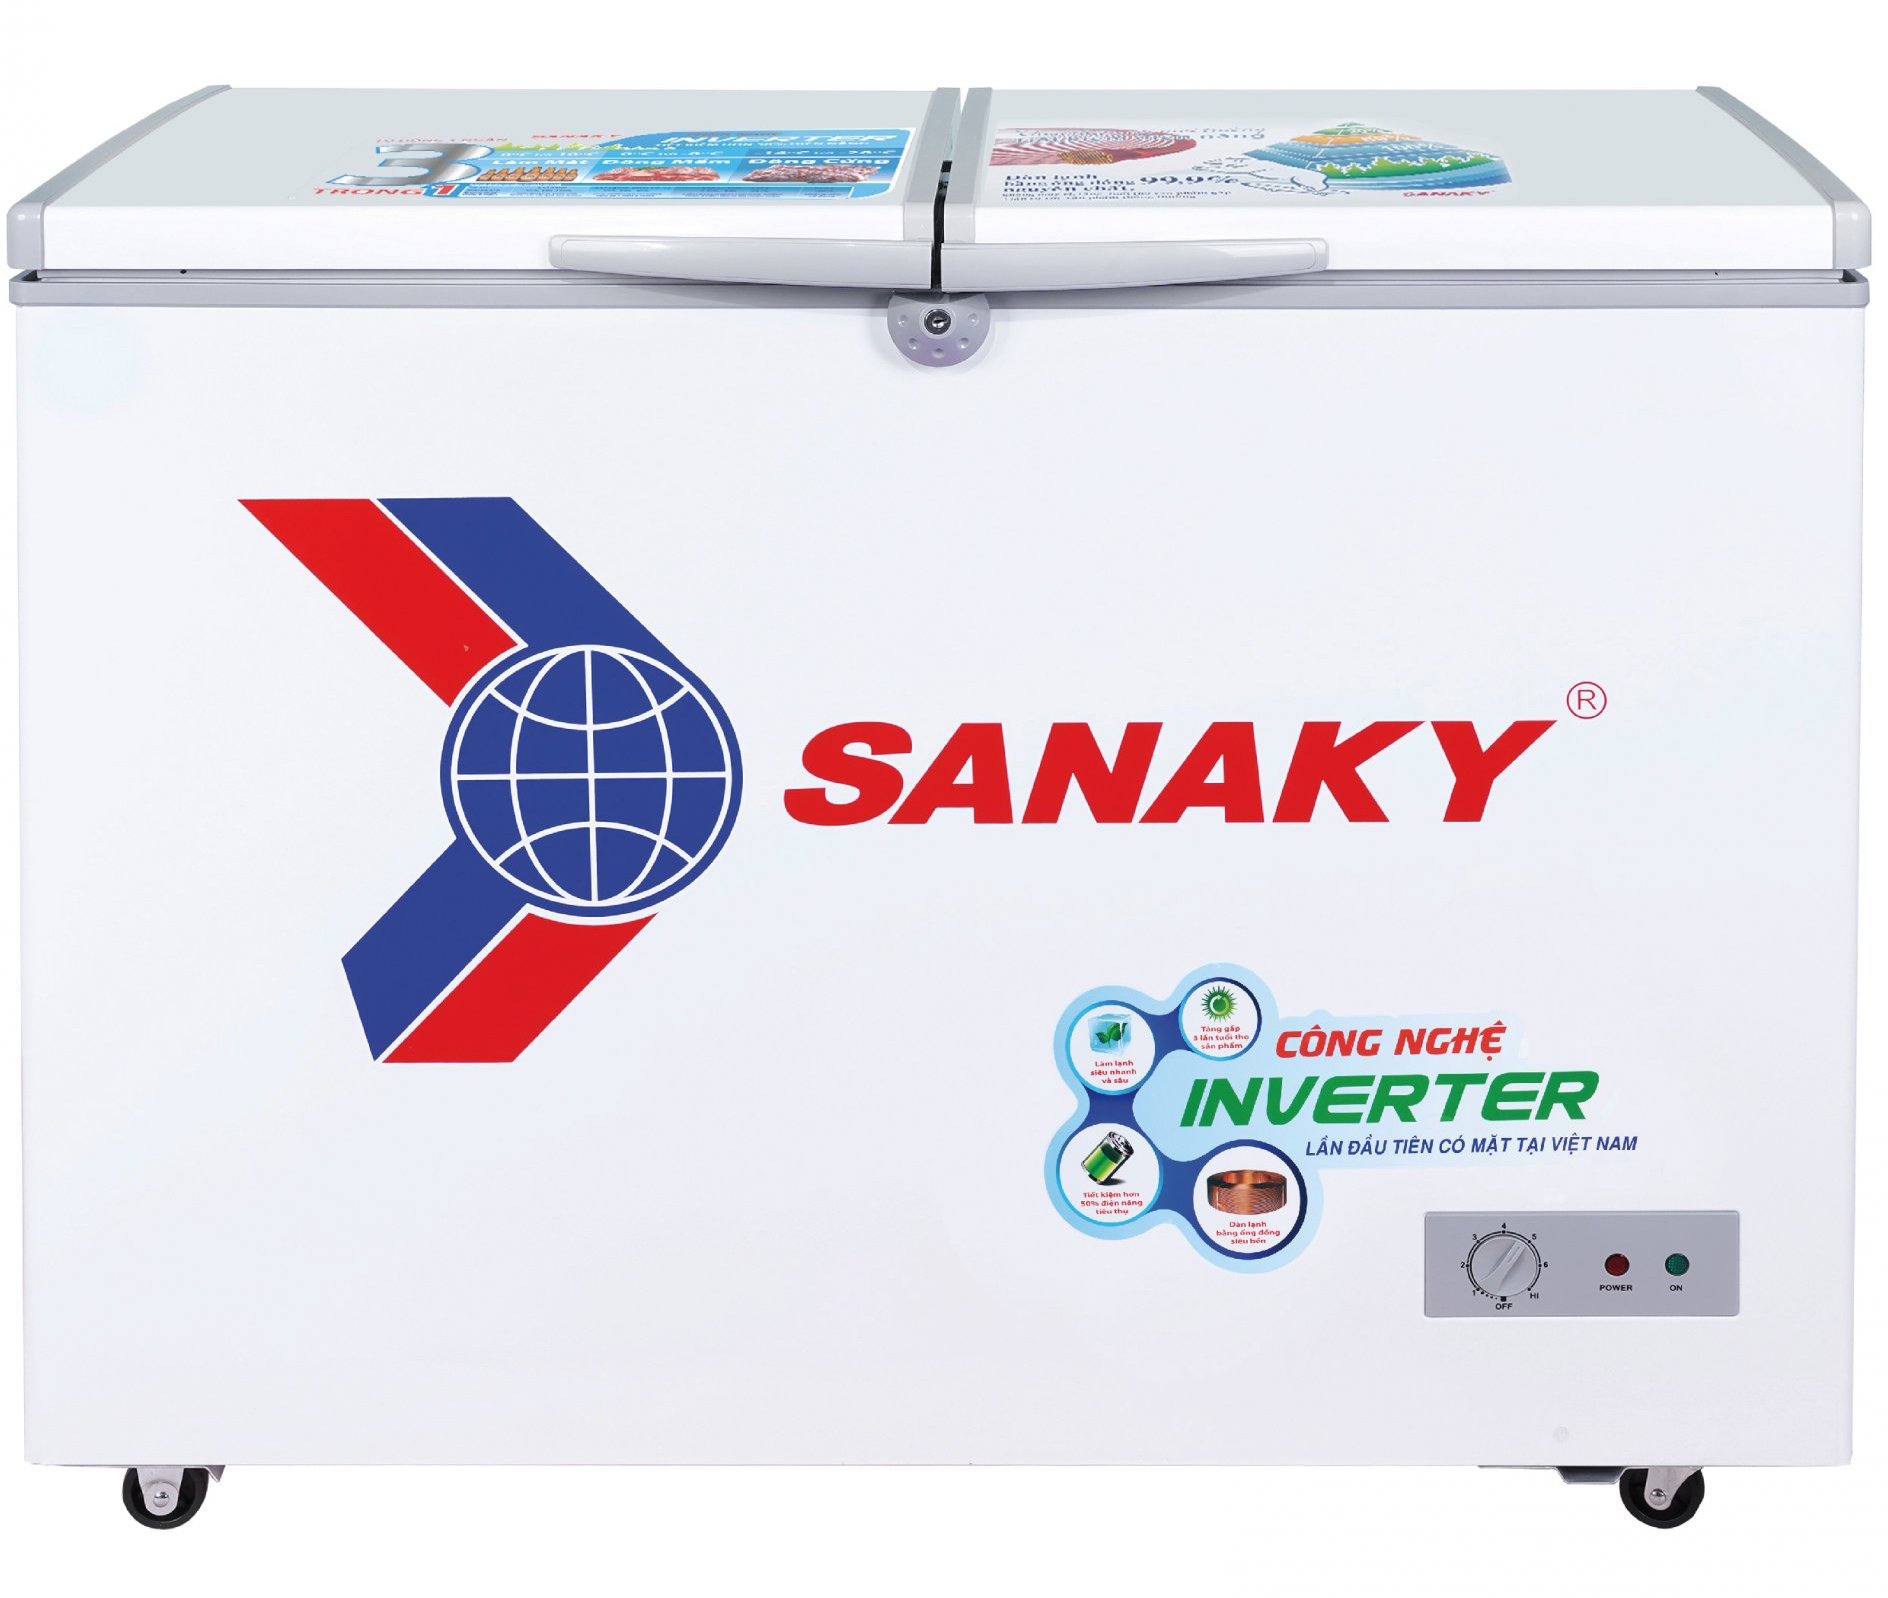 Tủ đông Sanaky 235 lít VH-2899A3 (1 ngăn, 2 cánh)